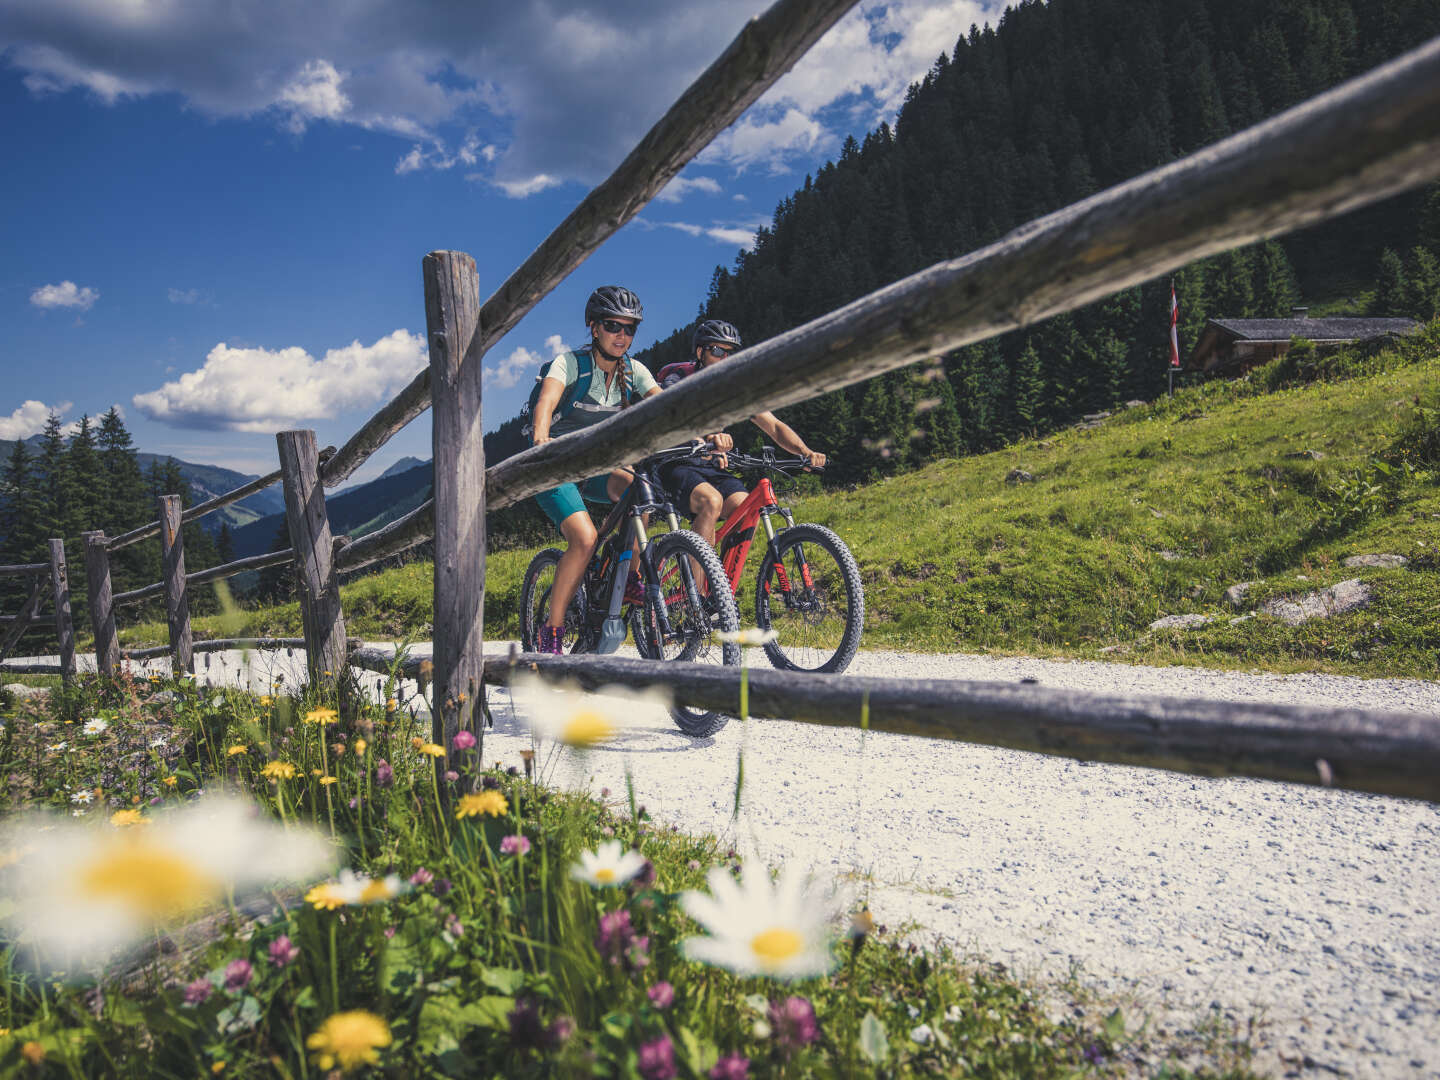 Kurze Auszeit in den Tiroler Alpen | 2 Nächte